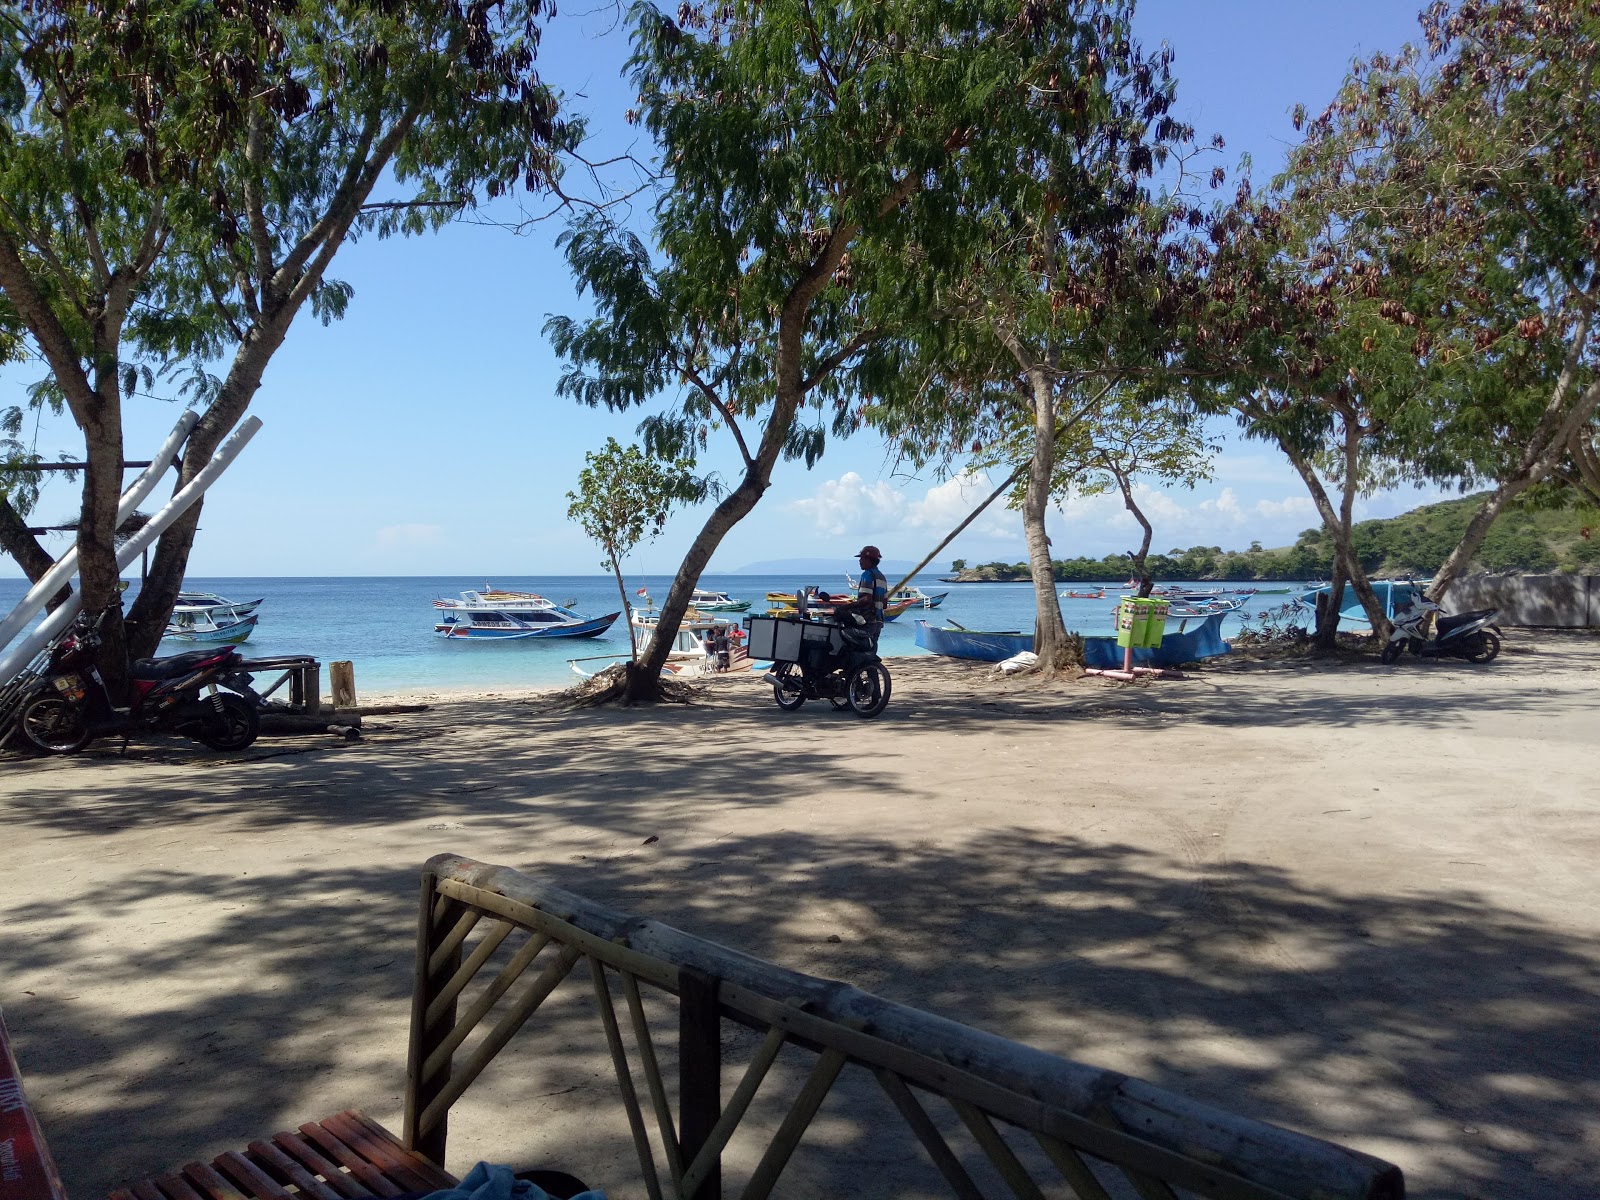 Zdjęcie Pink Beach Lombok - popularne miejsce wśród znawców relaksu